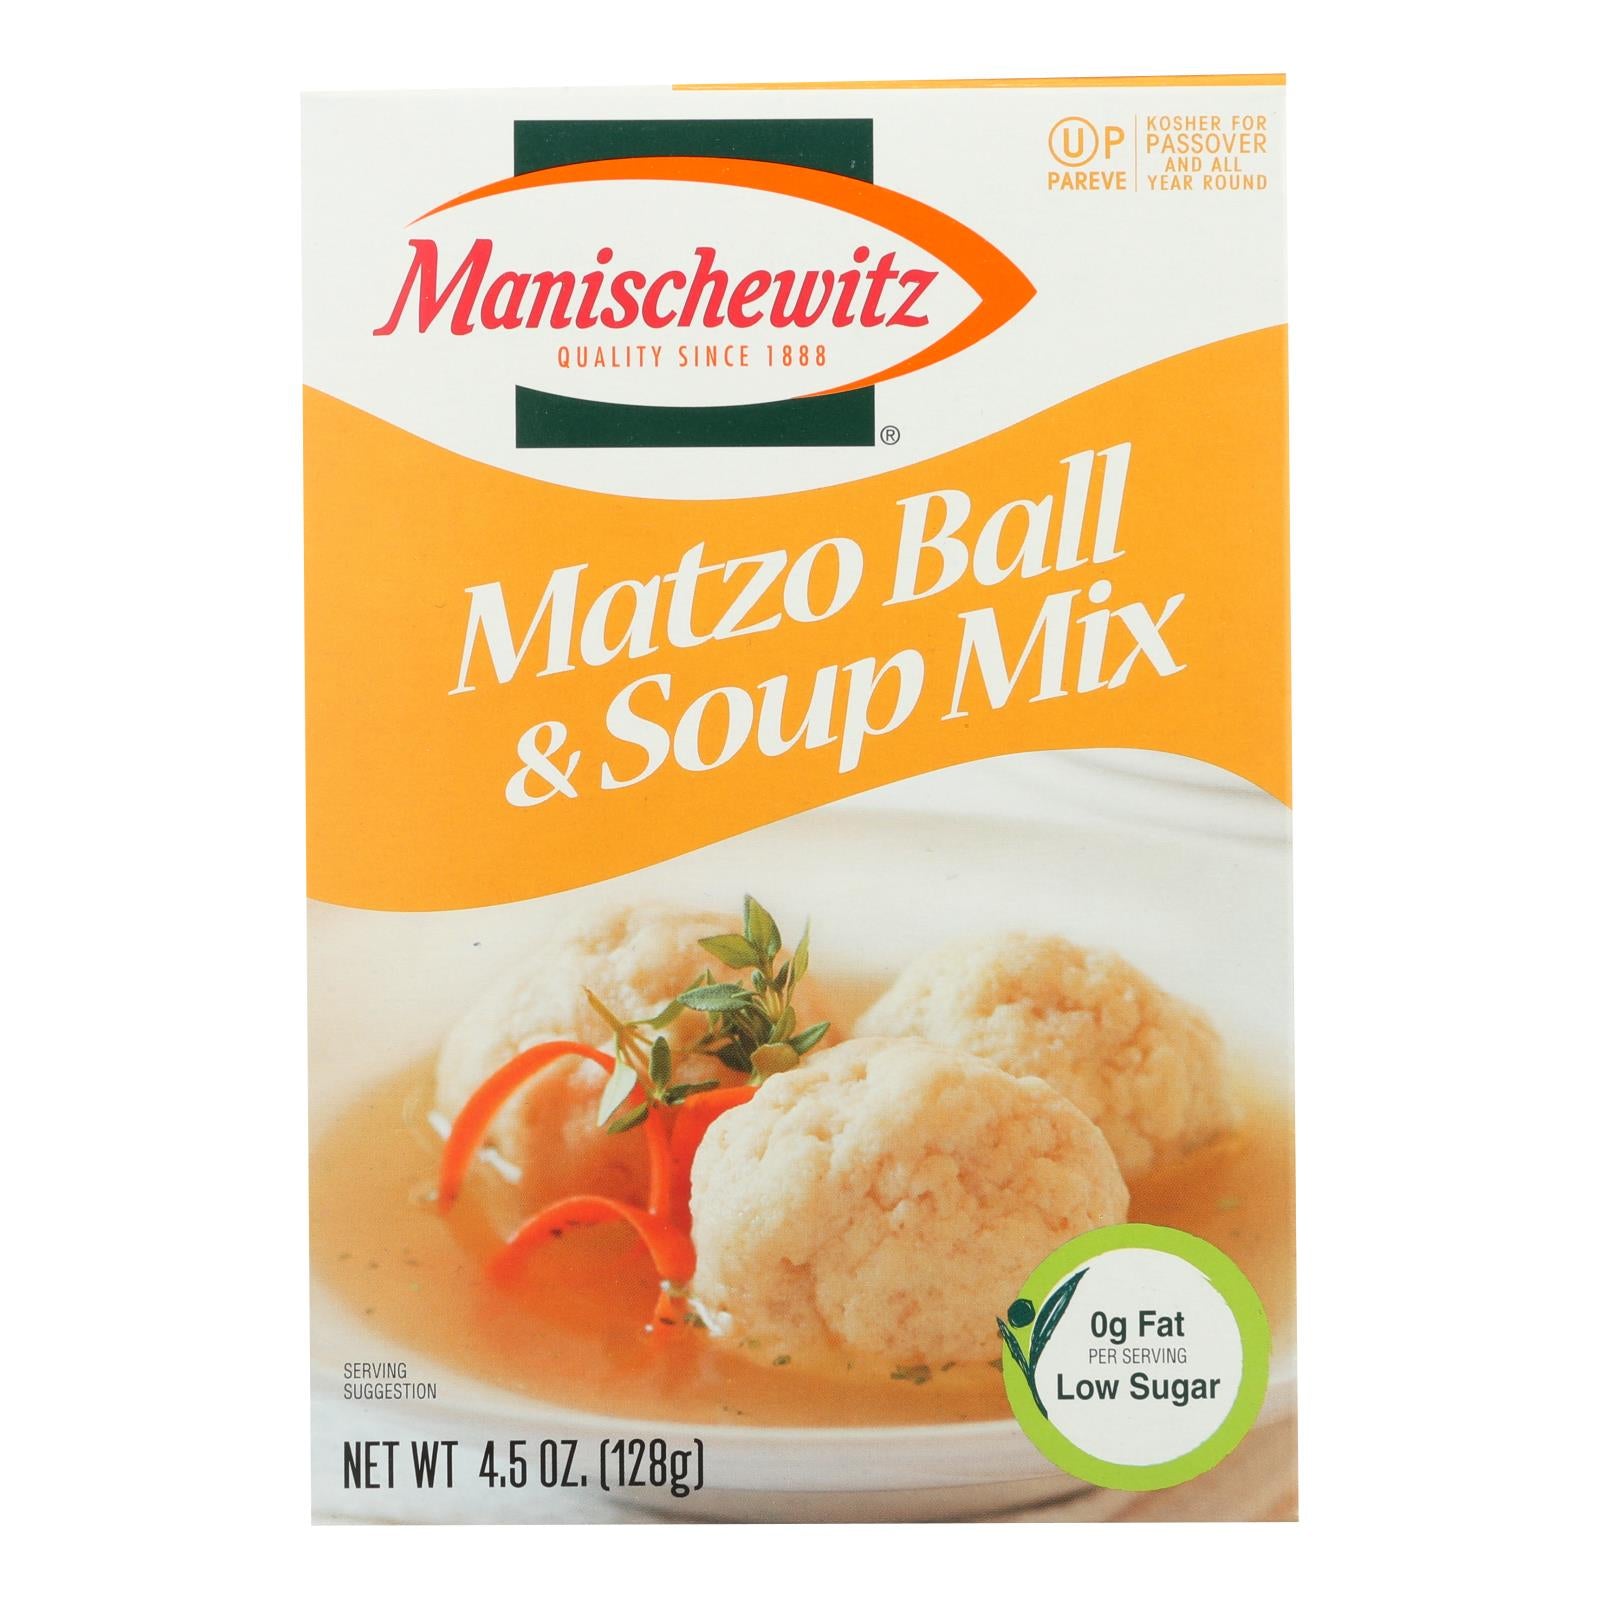 Manischewitz, Manischewitz - Mélange pour boules et soupes Matzo - Caisse de 24 - 4.5 oz.